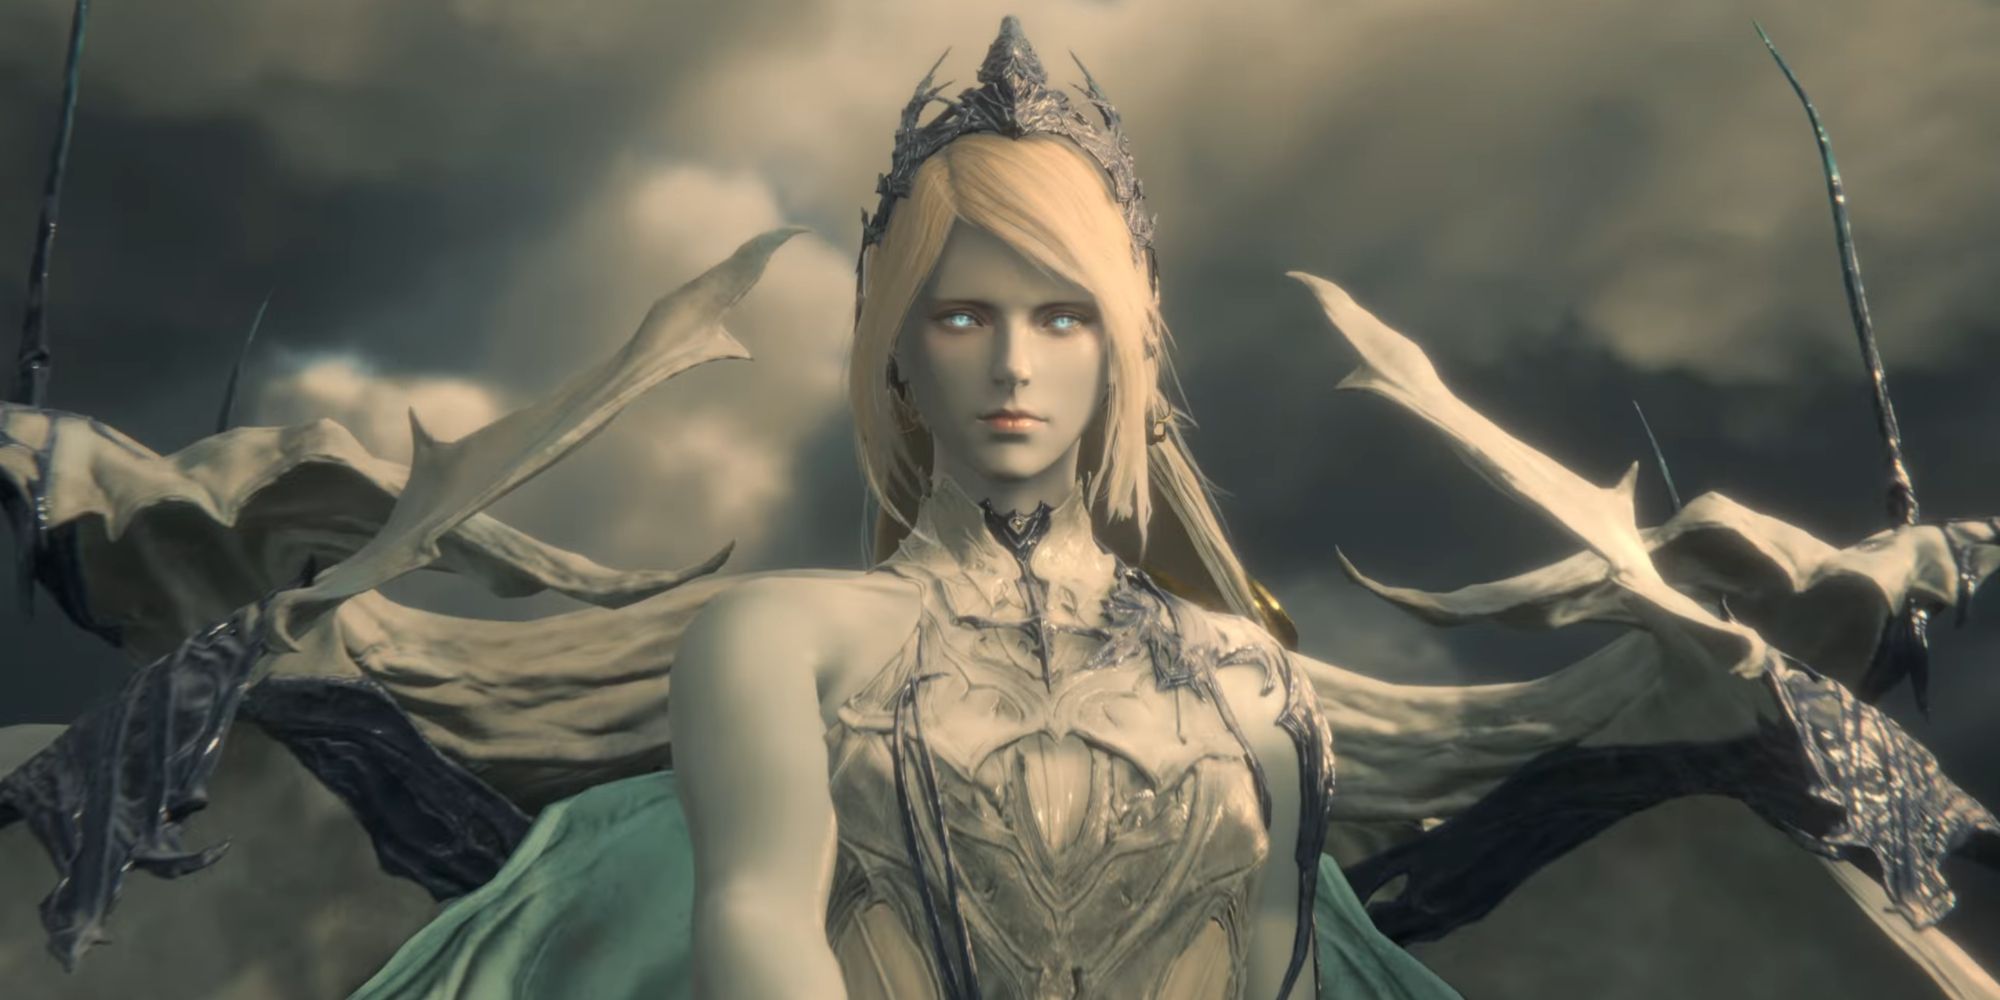 The Shiva Eikon from Final Fantasy XVI ahead of a stormy sky